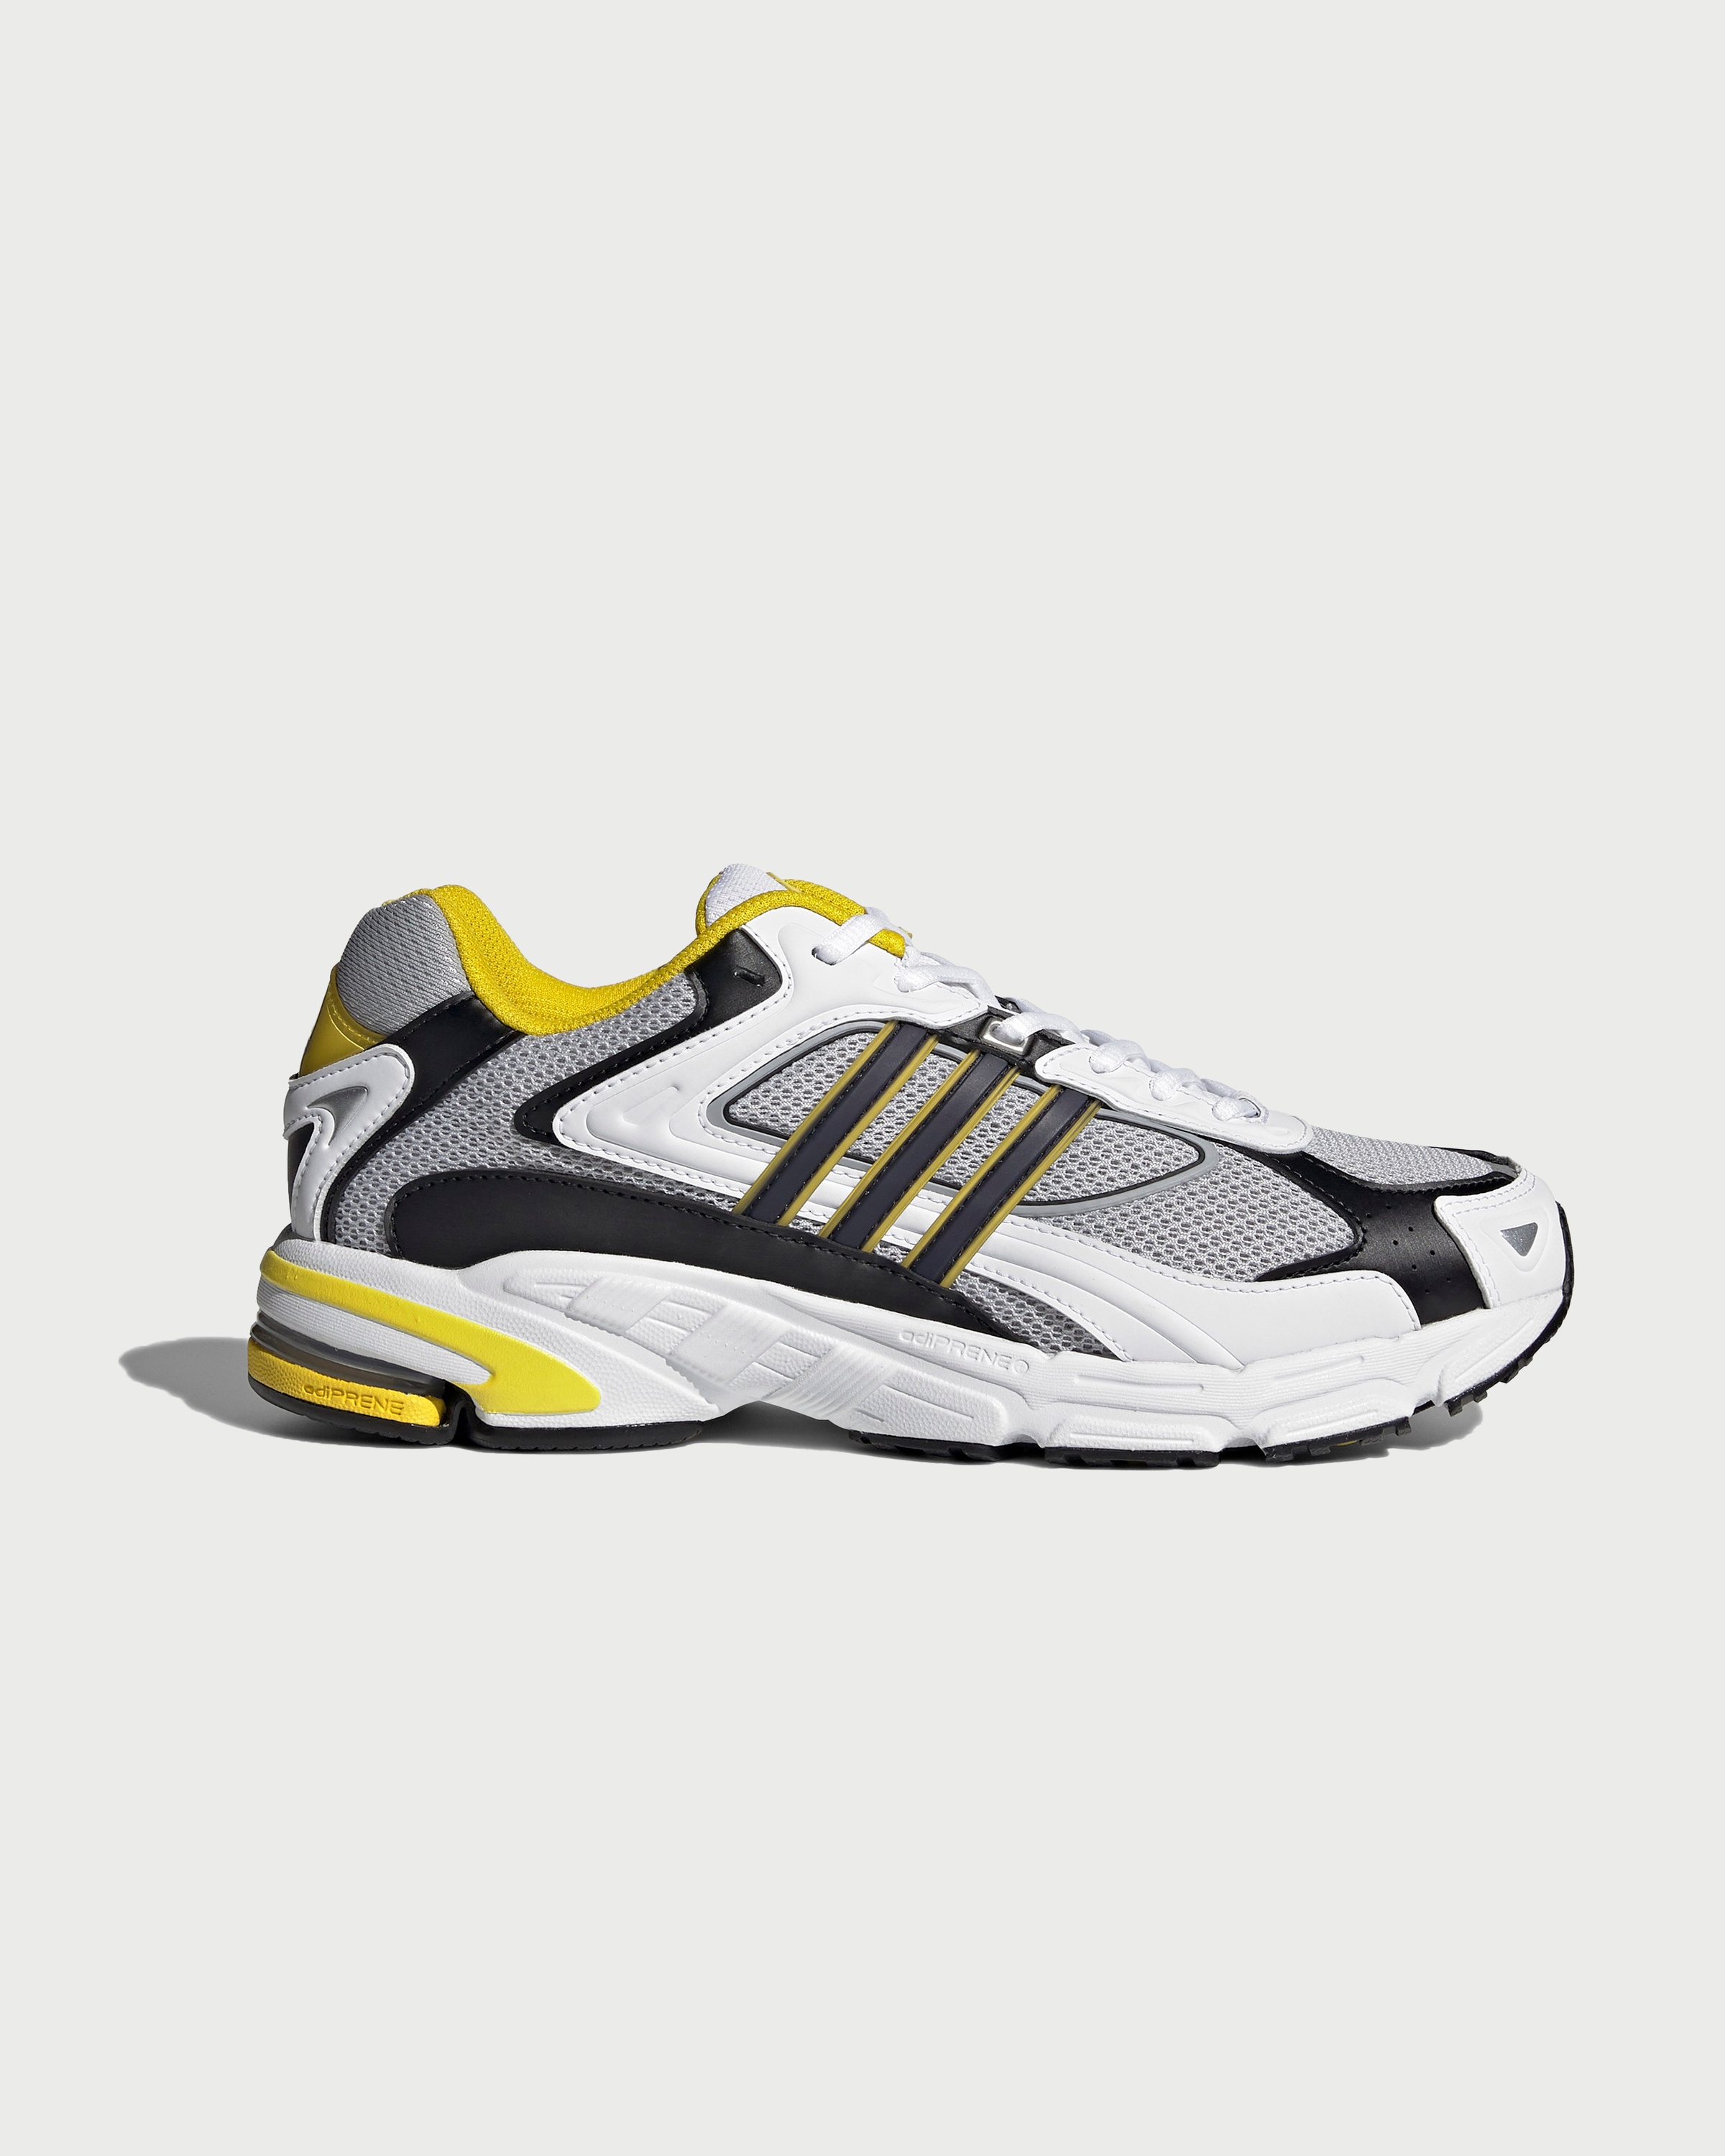 Adidas – Response CL White/Yellow - Sneakers - White - Image 1